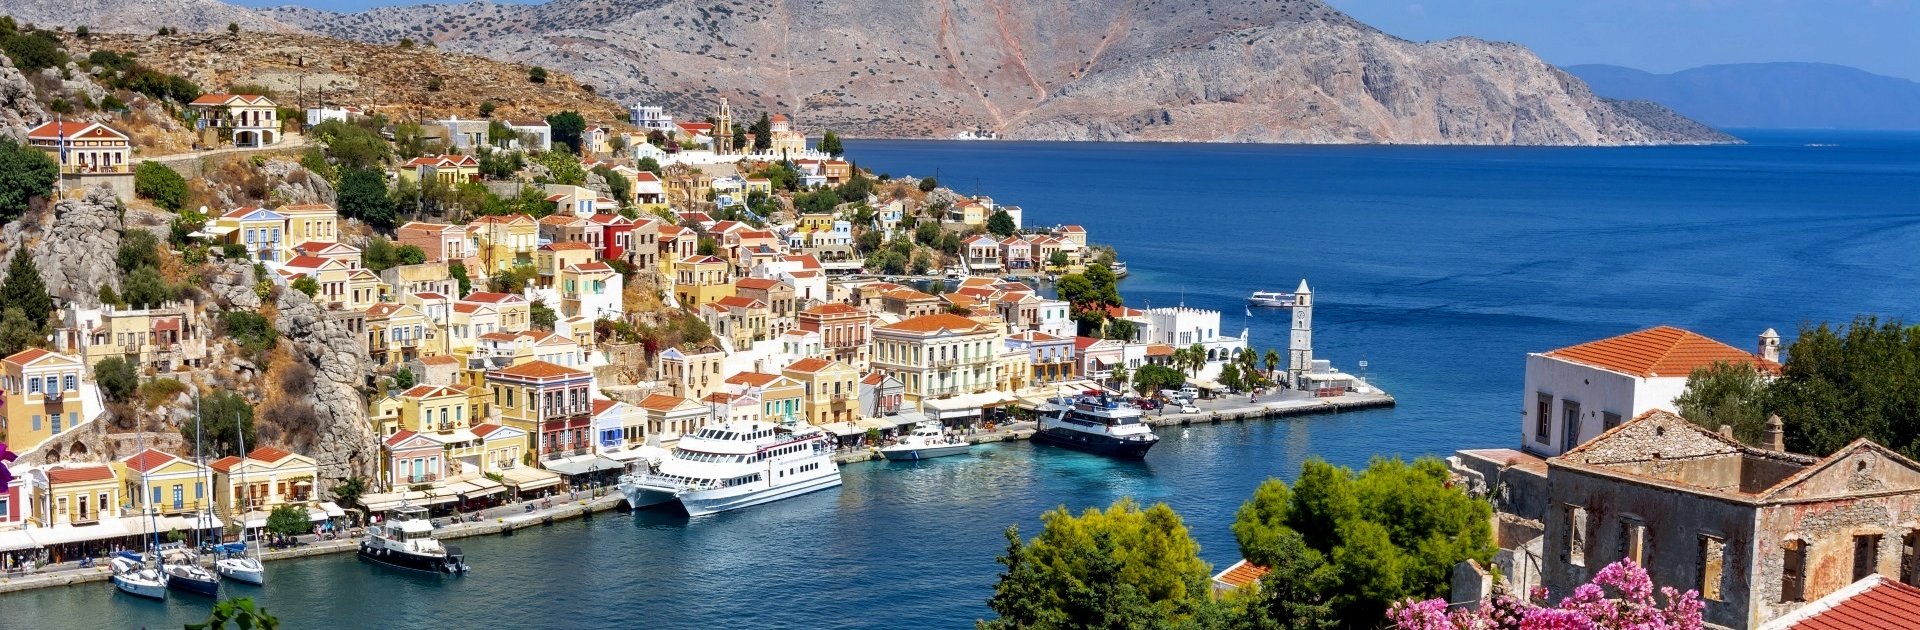 Ferienunterkünfte in Griechenland